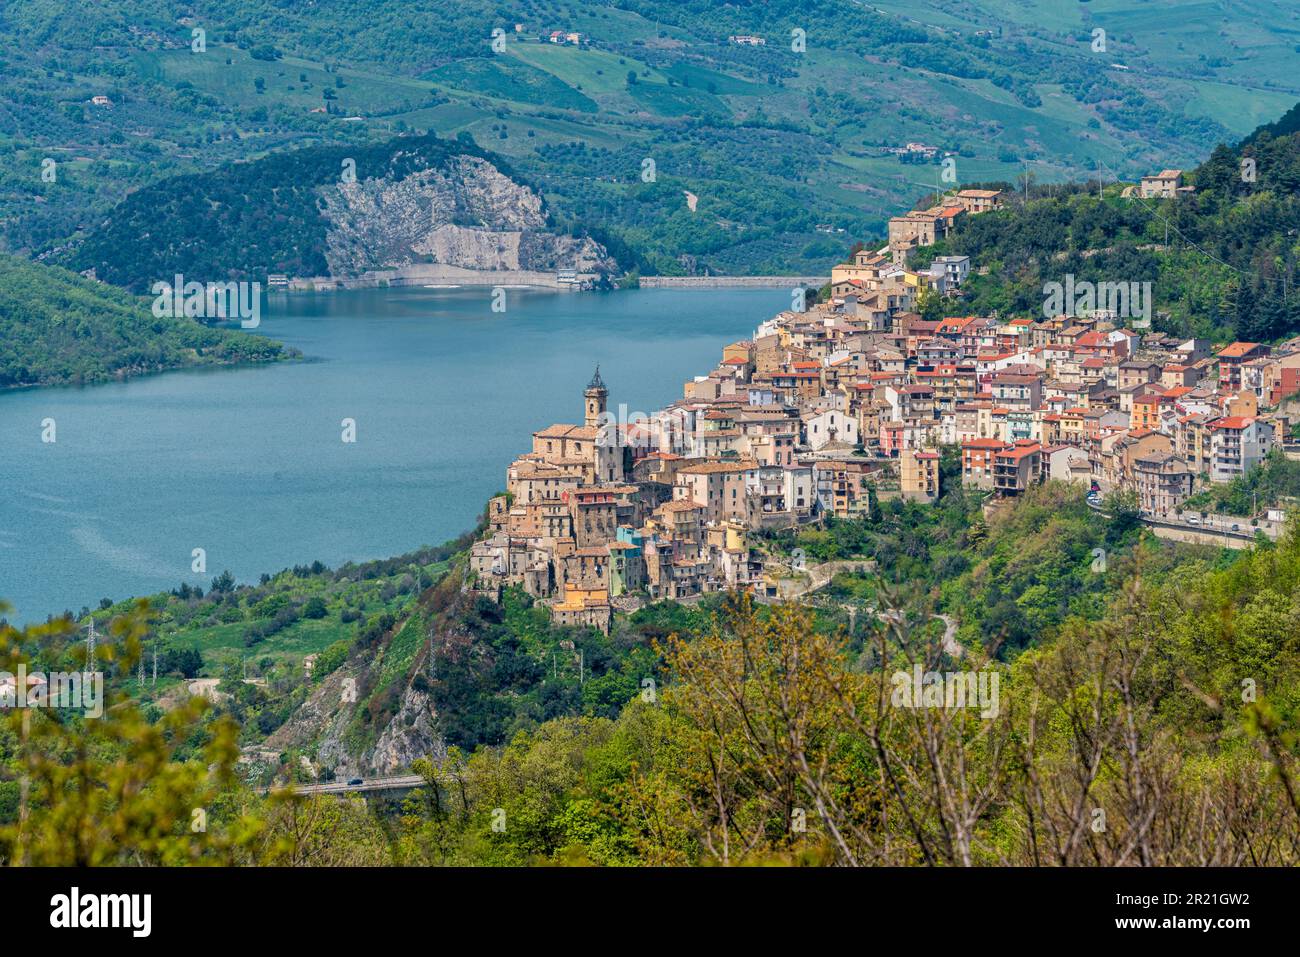 Vue panoramique sur Colledimezzo, beau village de la province de Chieti, Abruzzes, centre de l'Italie. Banque D'Images